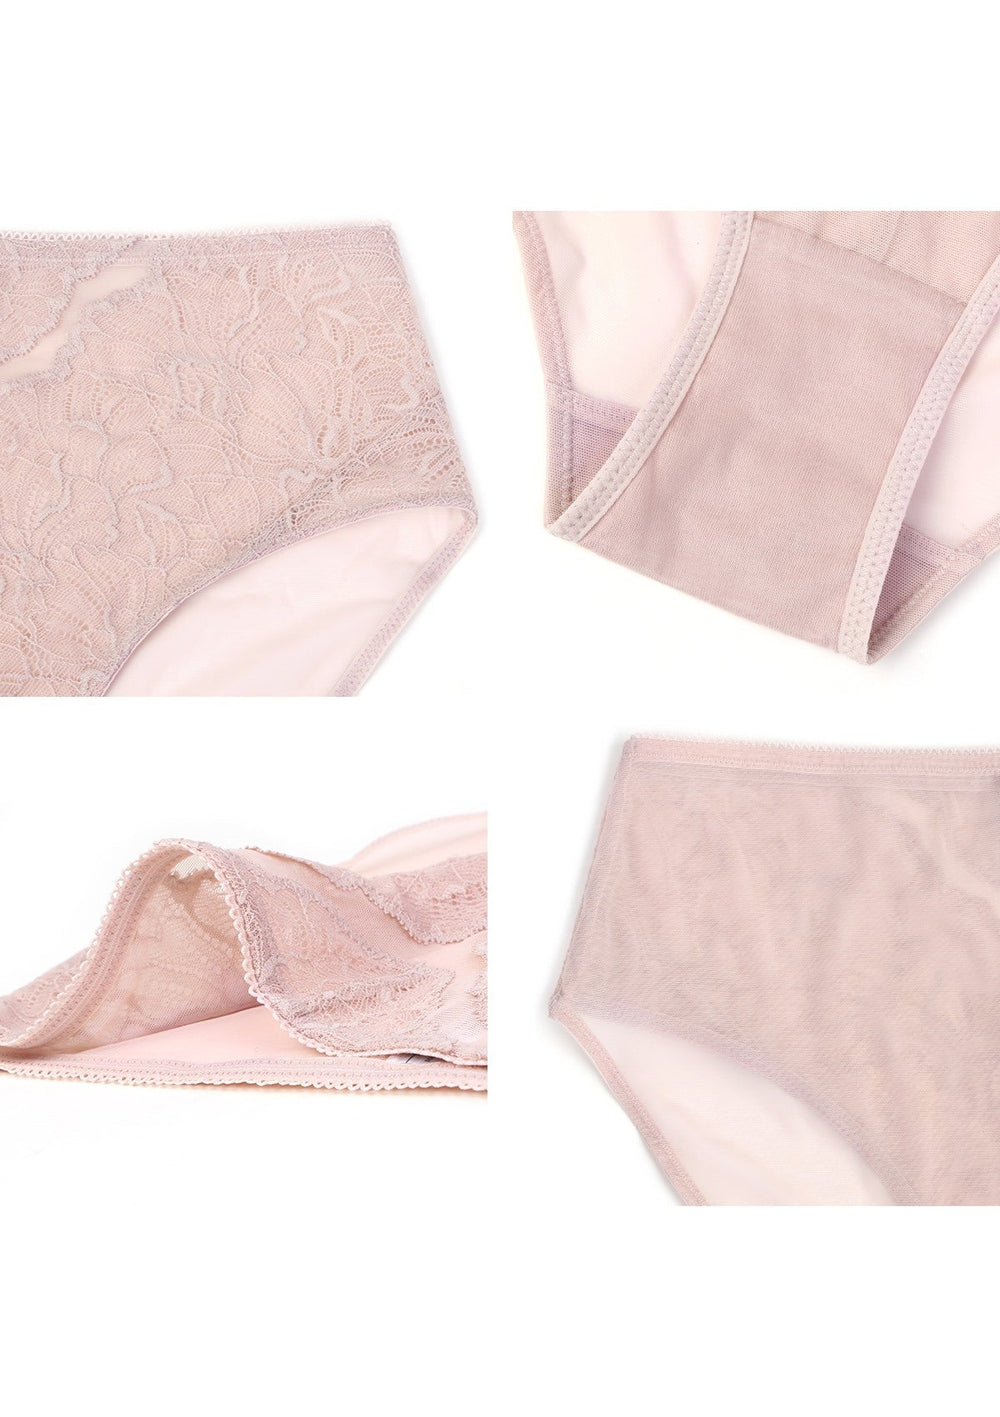 Blossom High-Rise Dark Pink Lace Brief Underwear